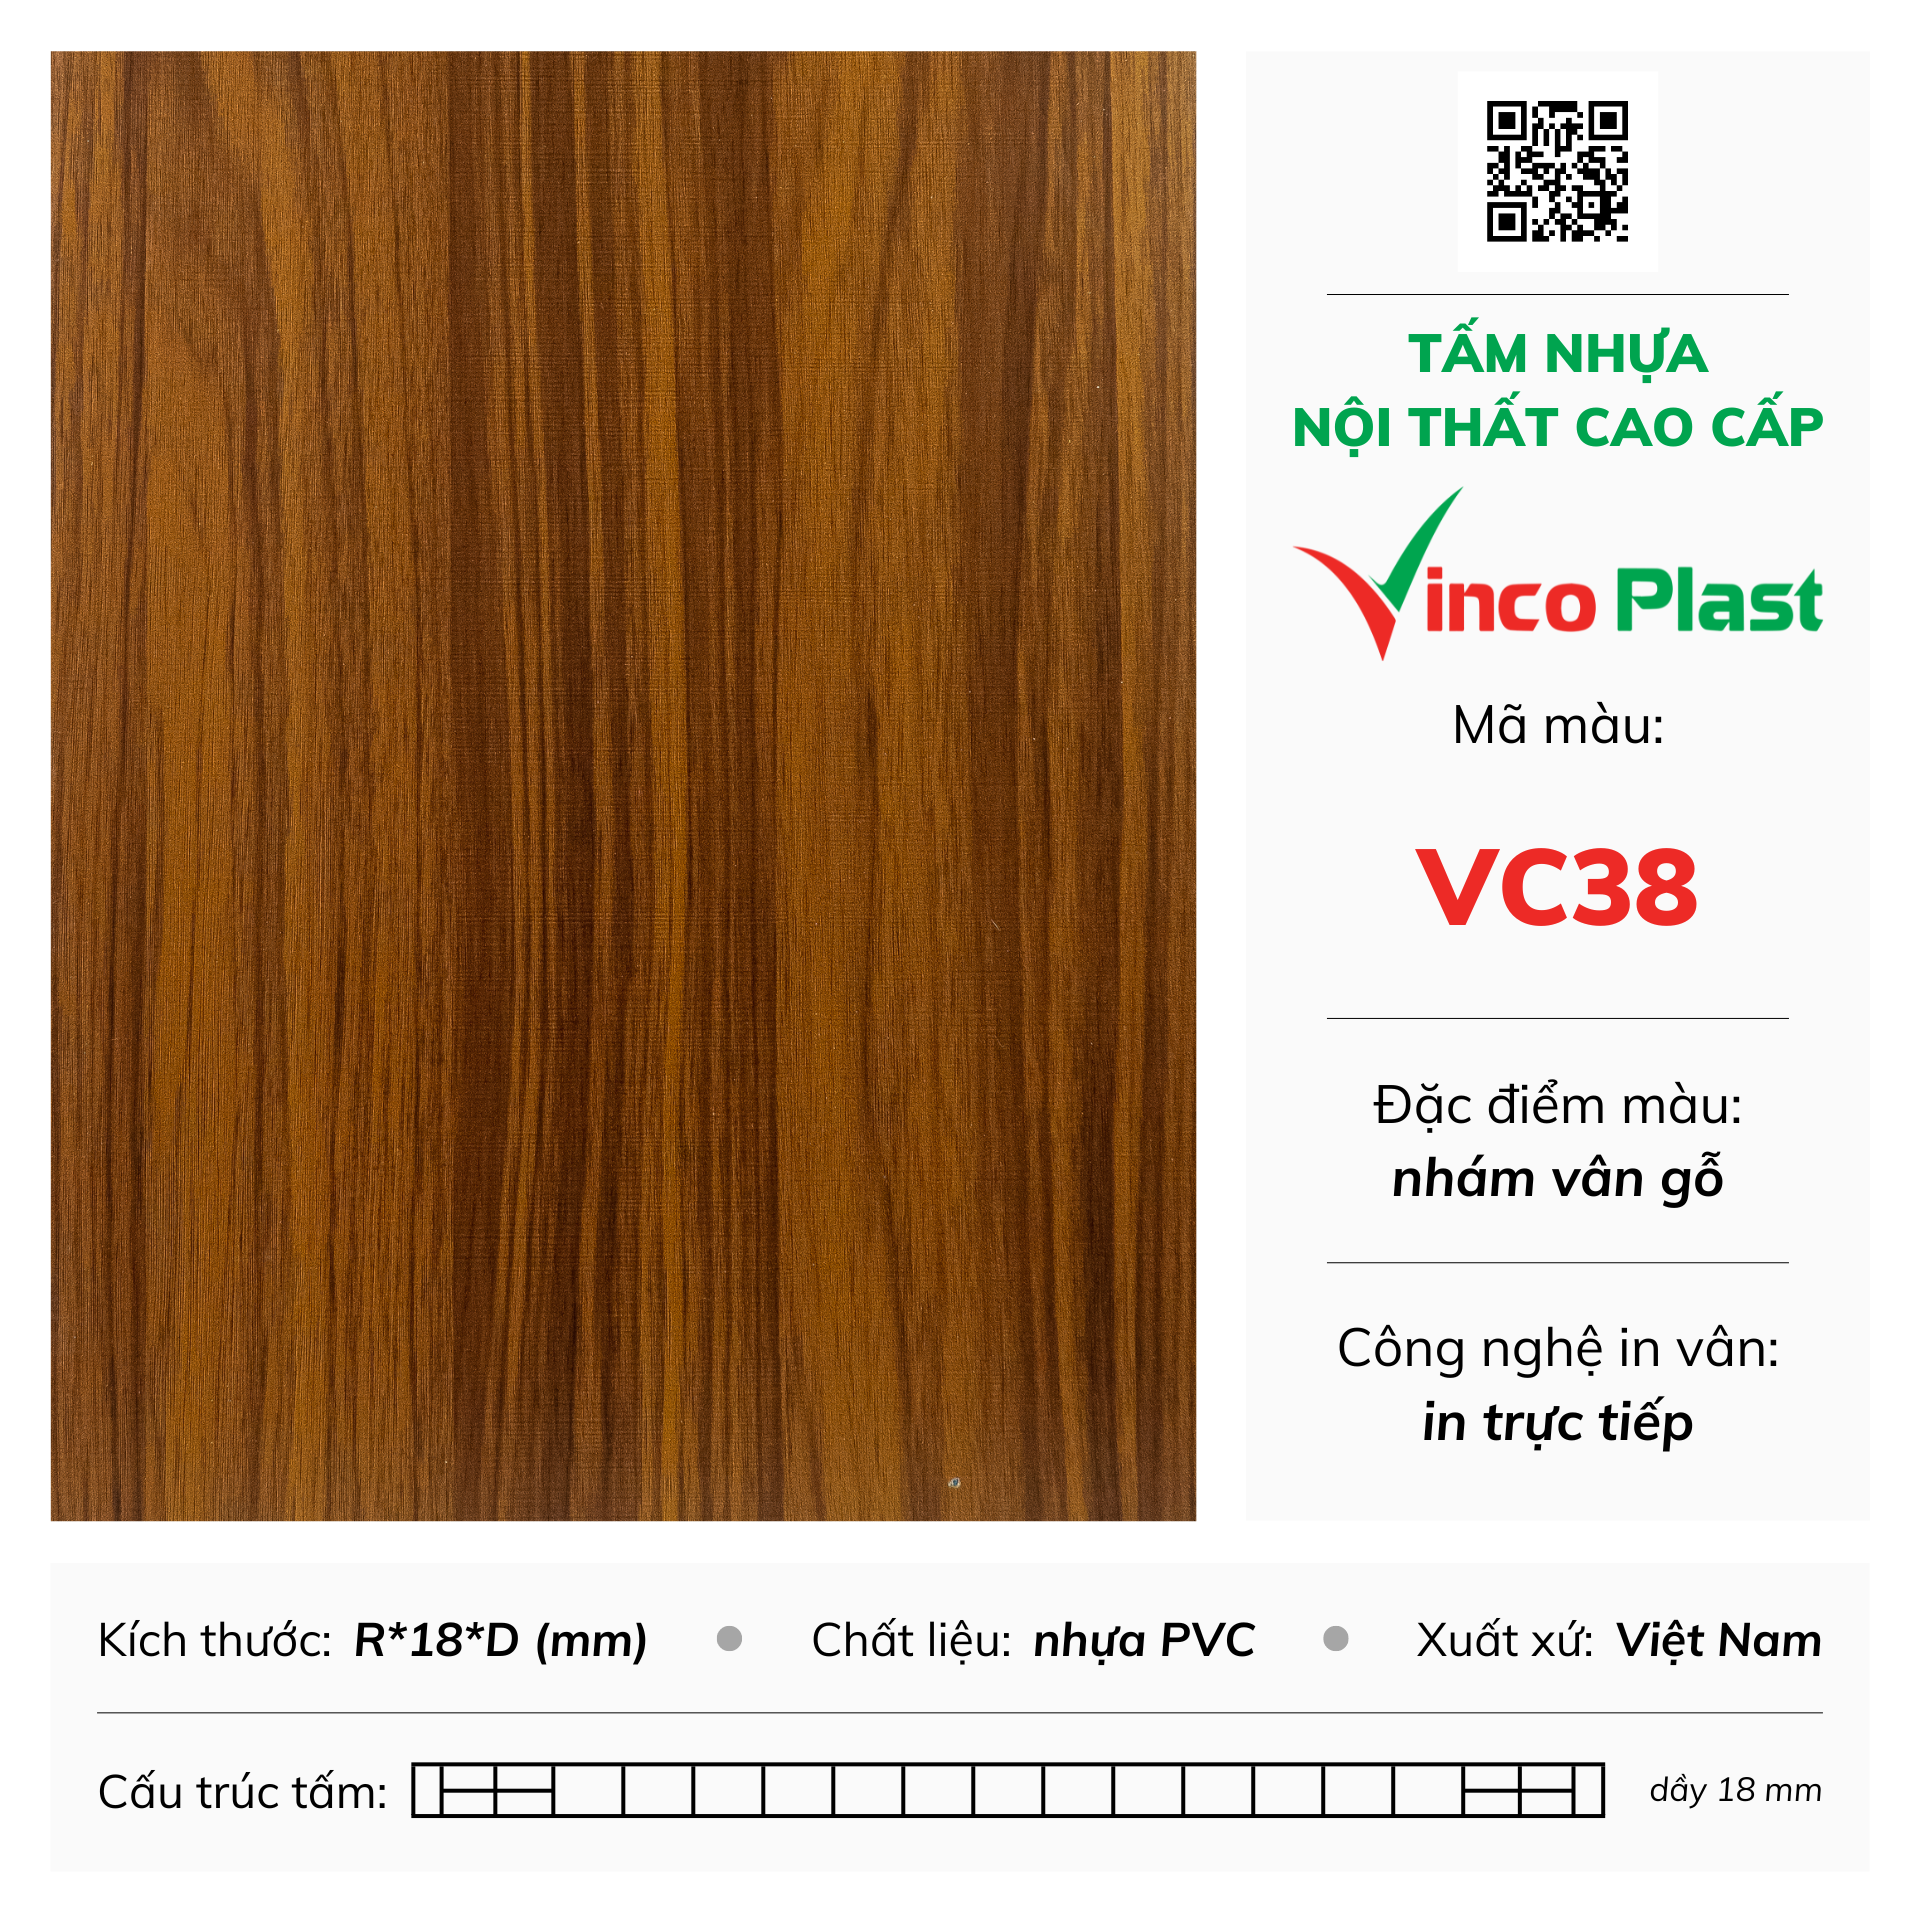 Tấm nhựa nội thất cao cấp Vincoplast màu vc38